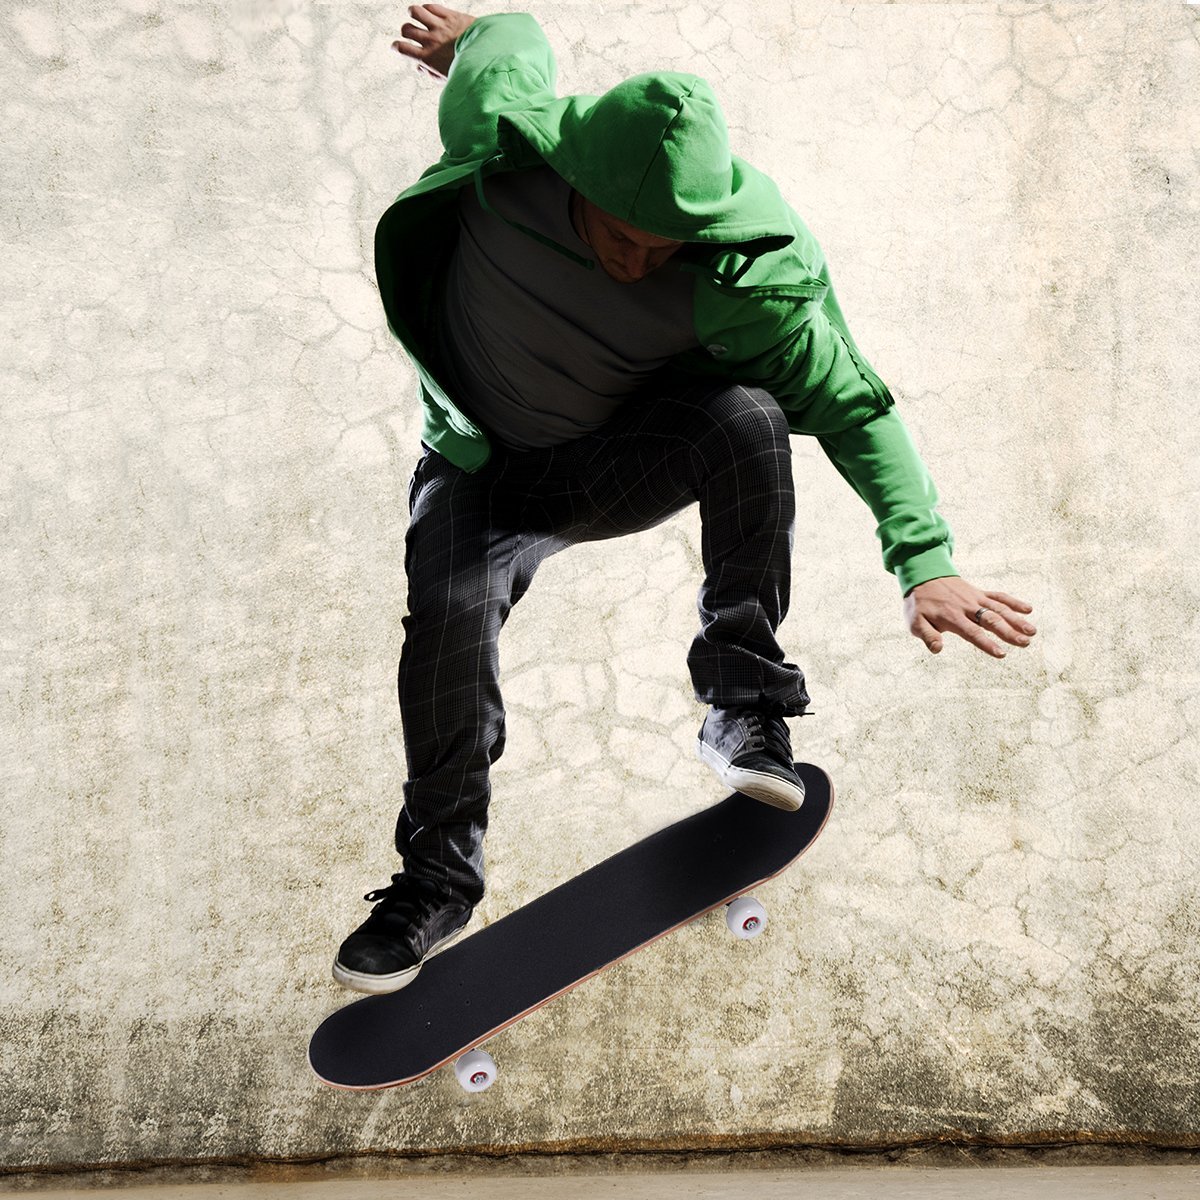 Skateboard Komplettboard Funboard Minicruiser Holzboard Longboard 20x79cm-schwarz